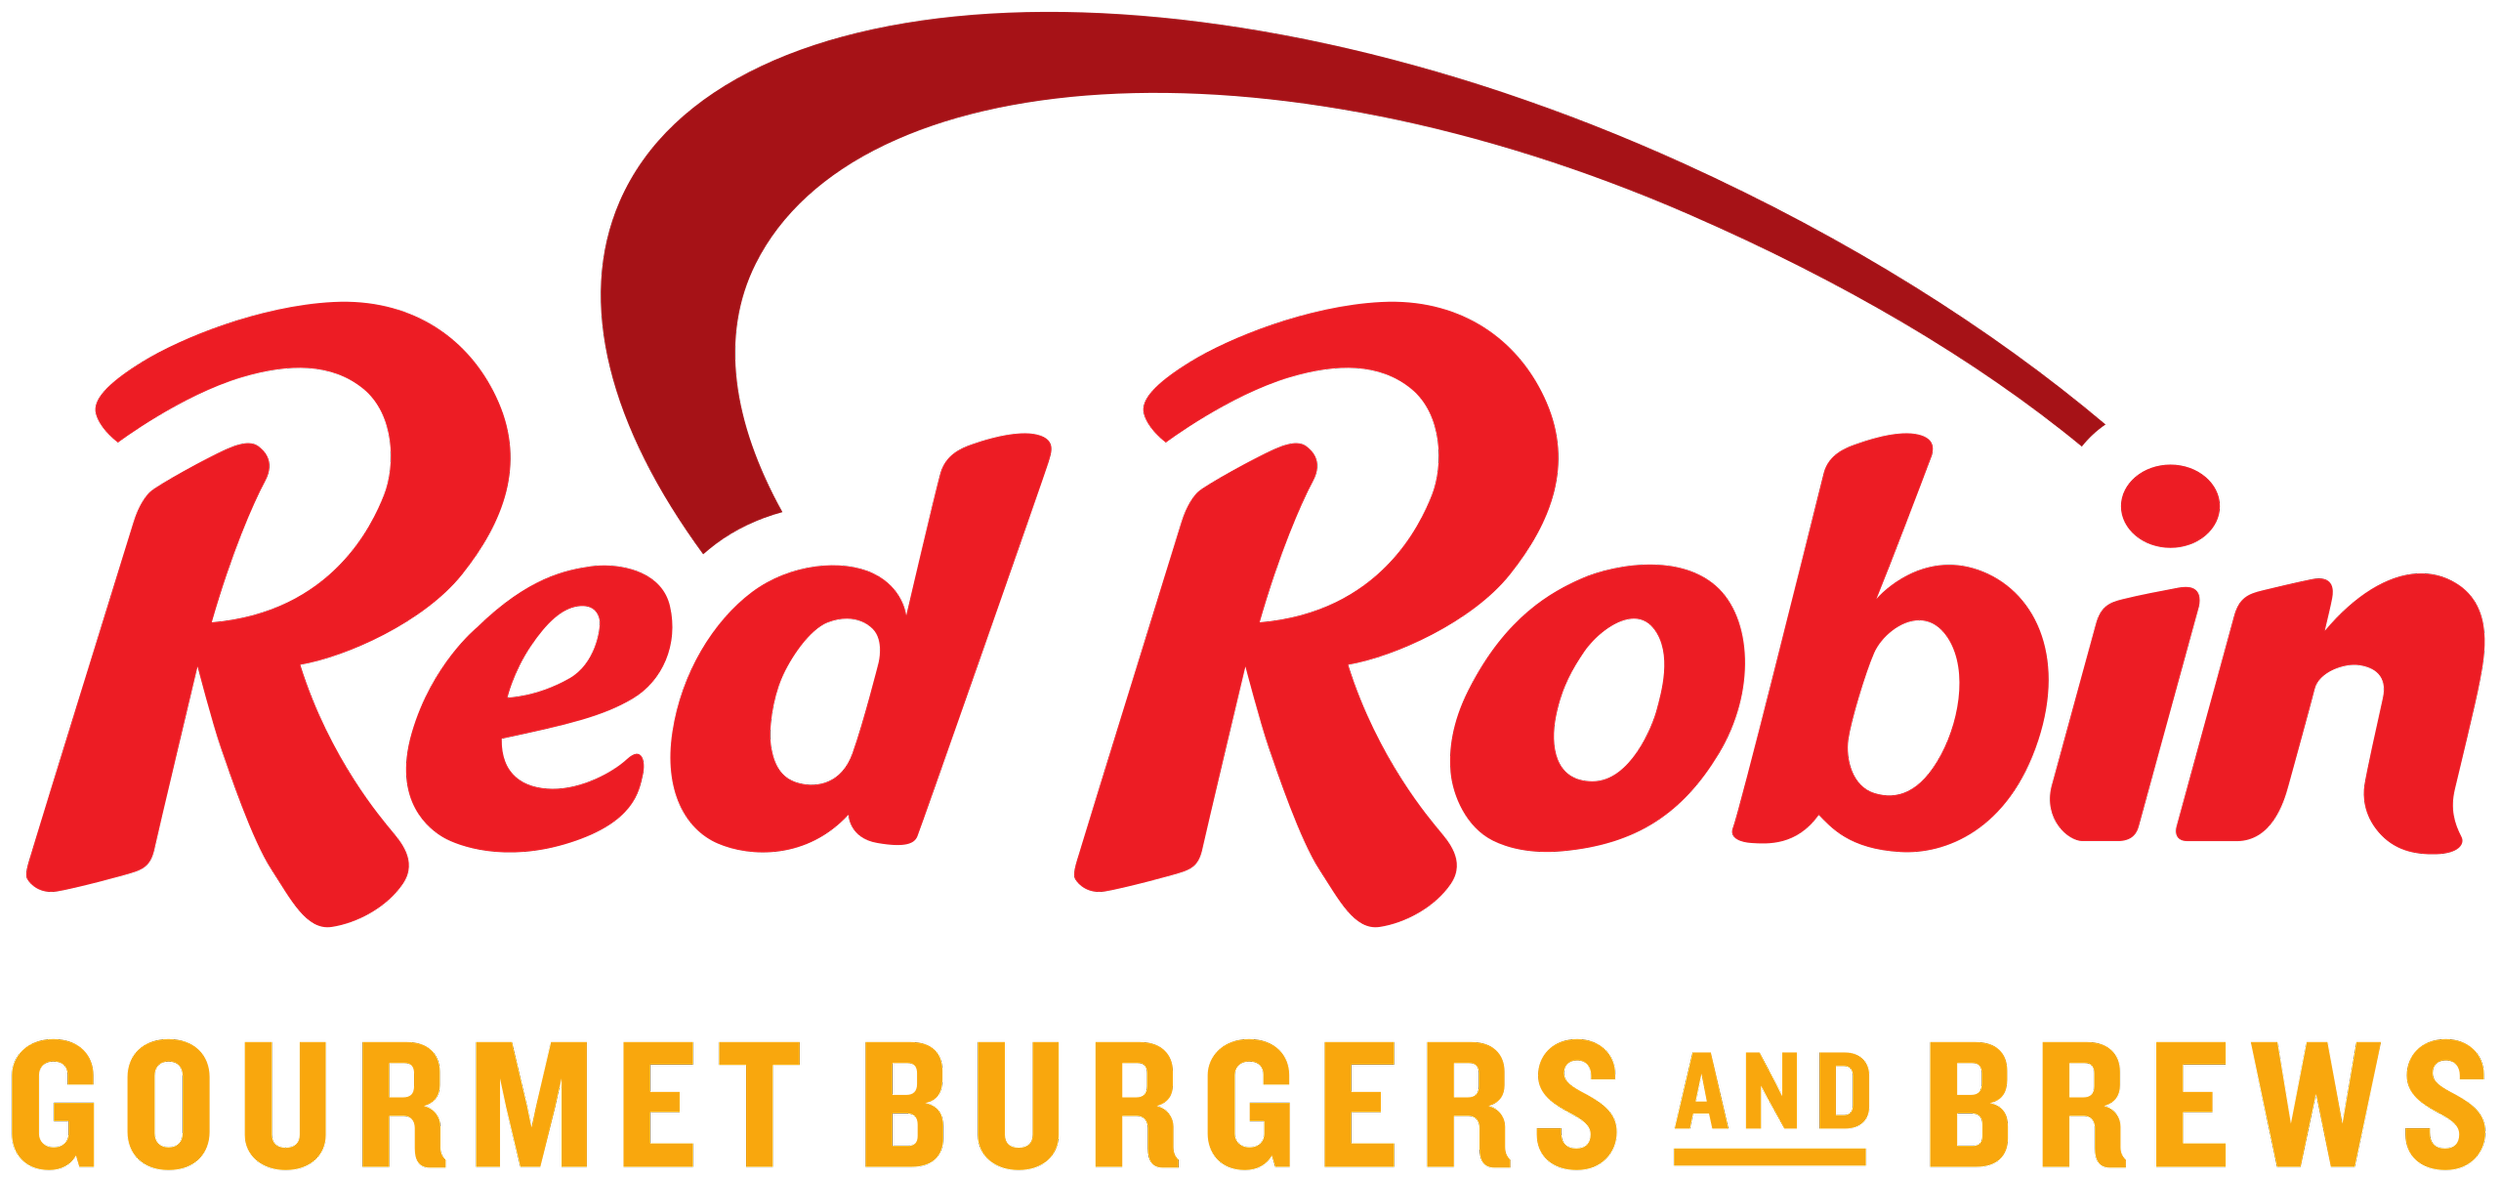 Red_Robin_logo.svg.png